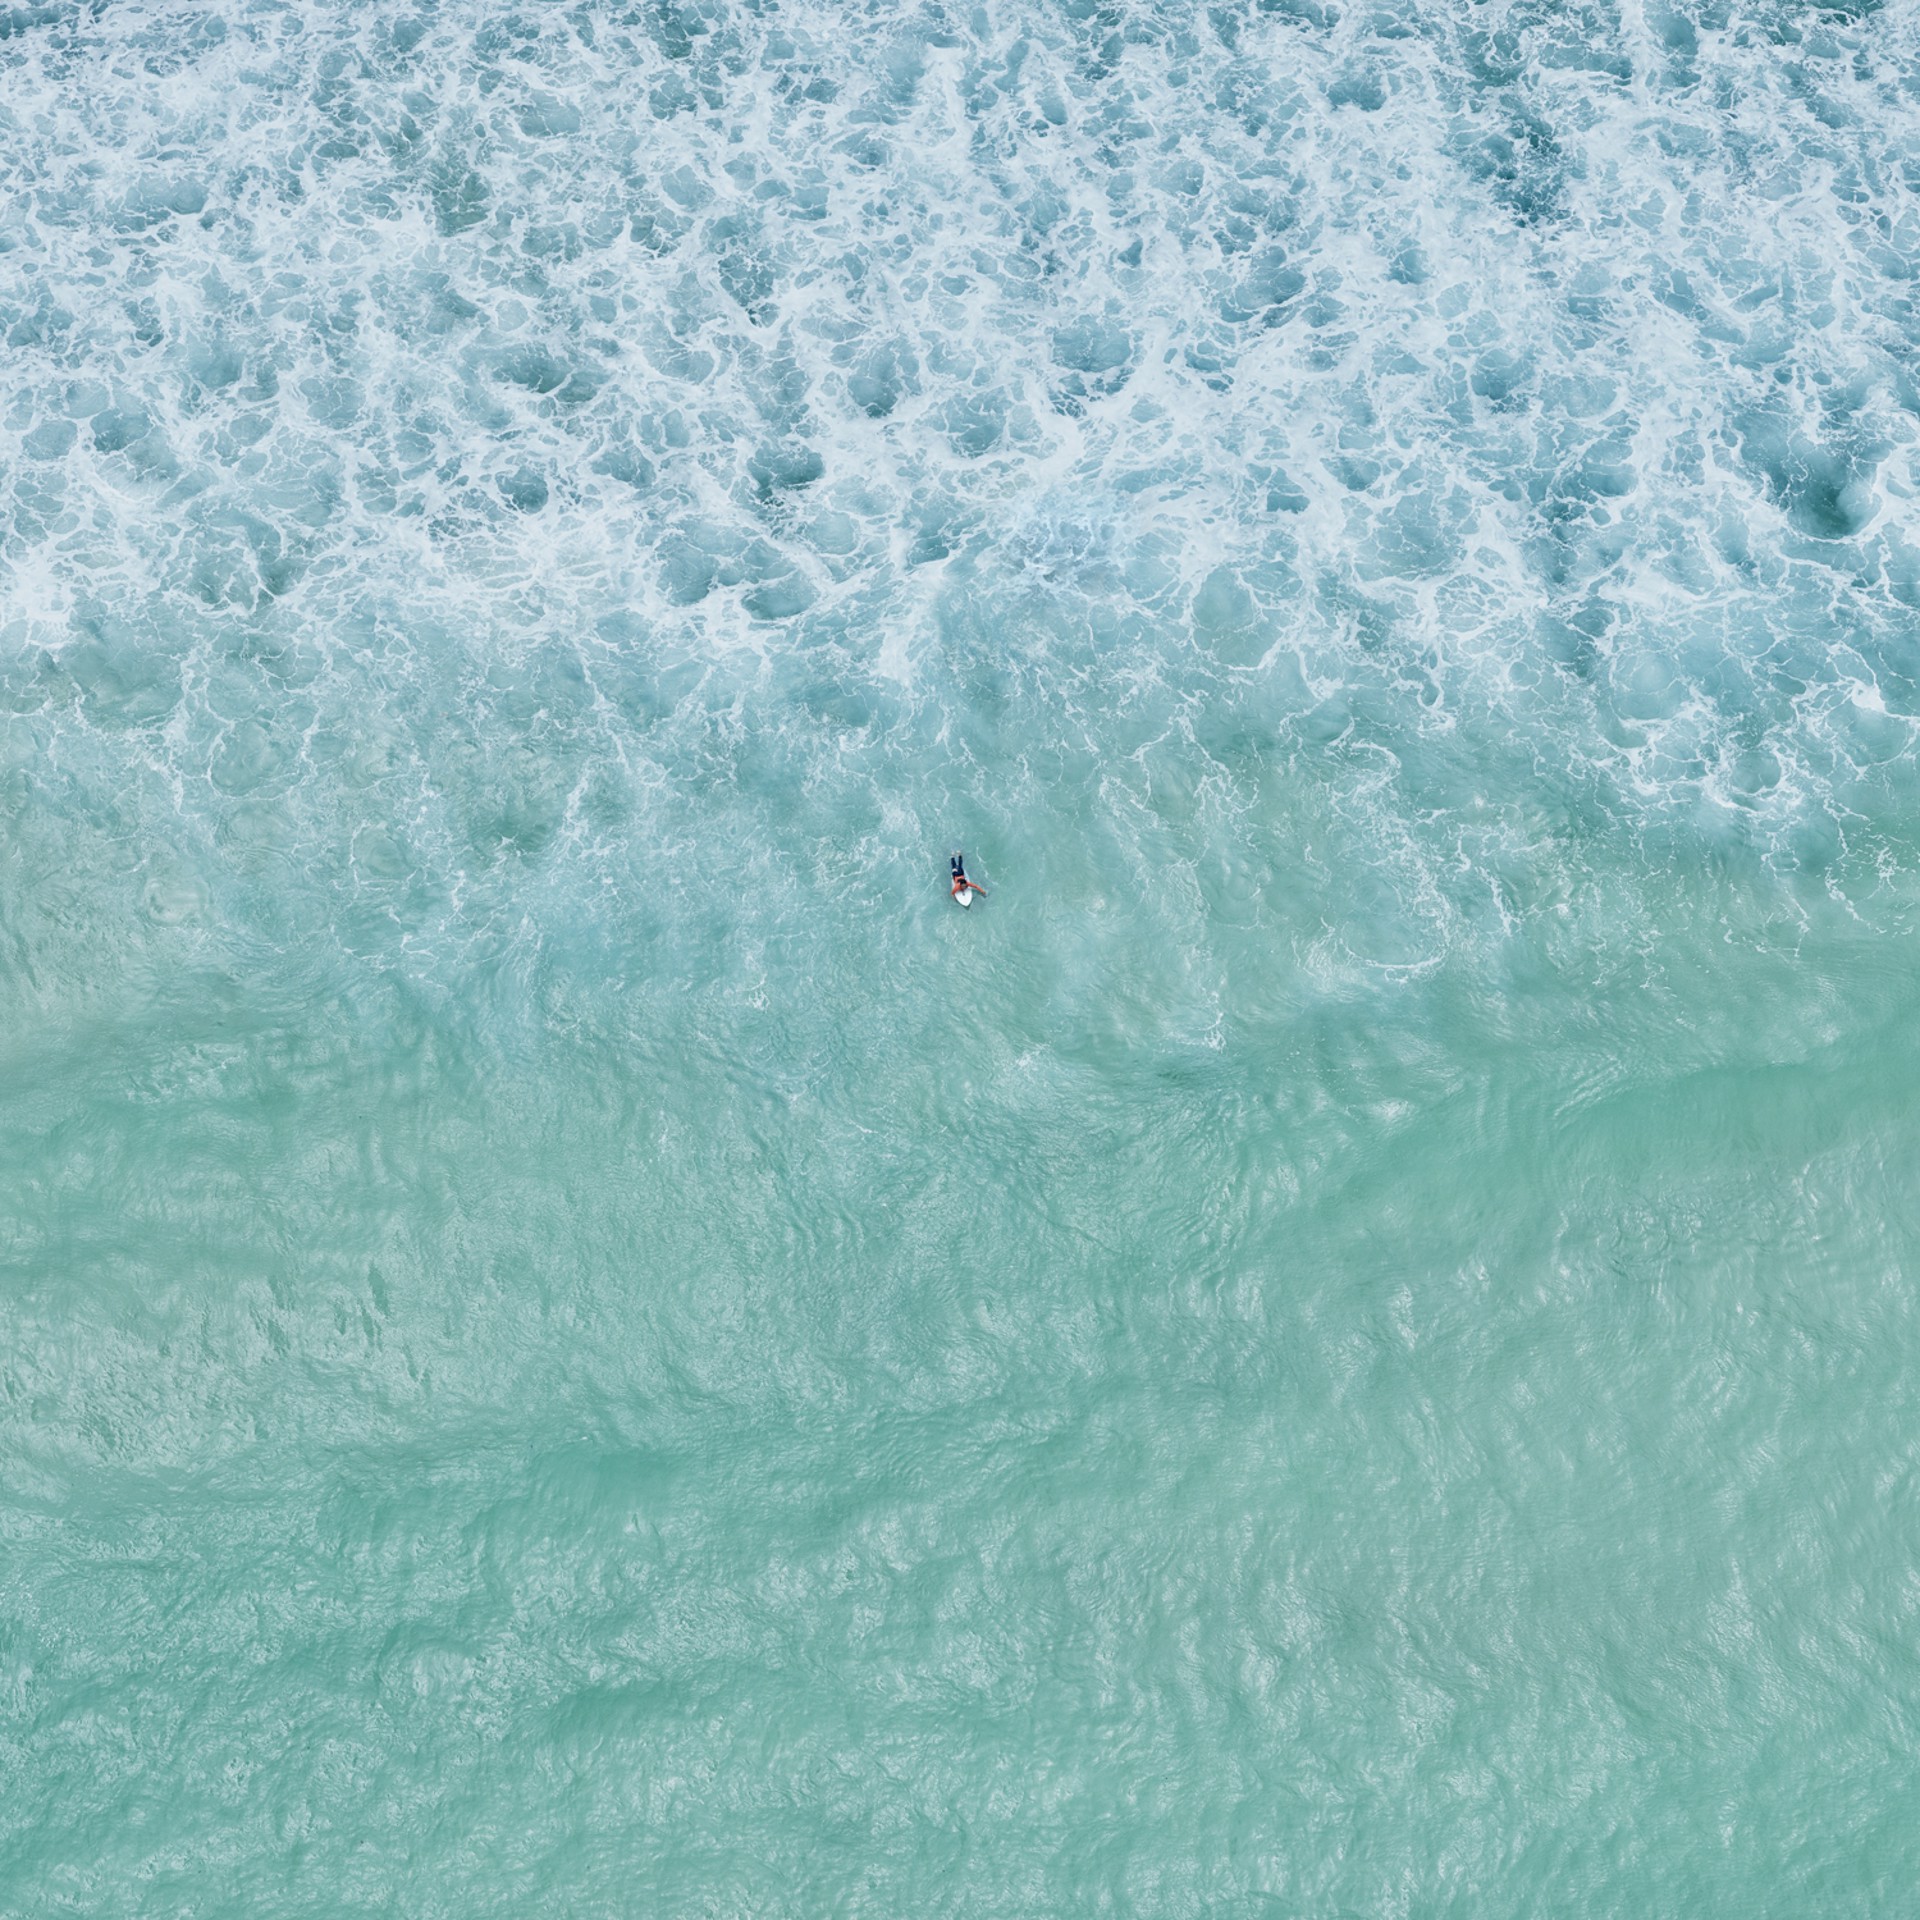 Surfer Perth by David Burdeny